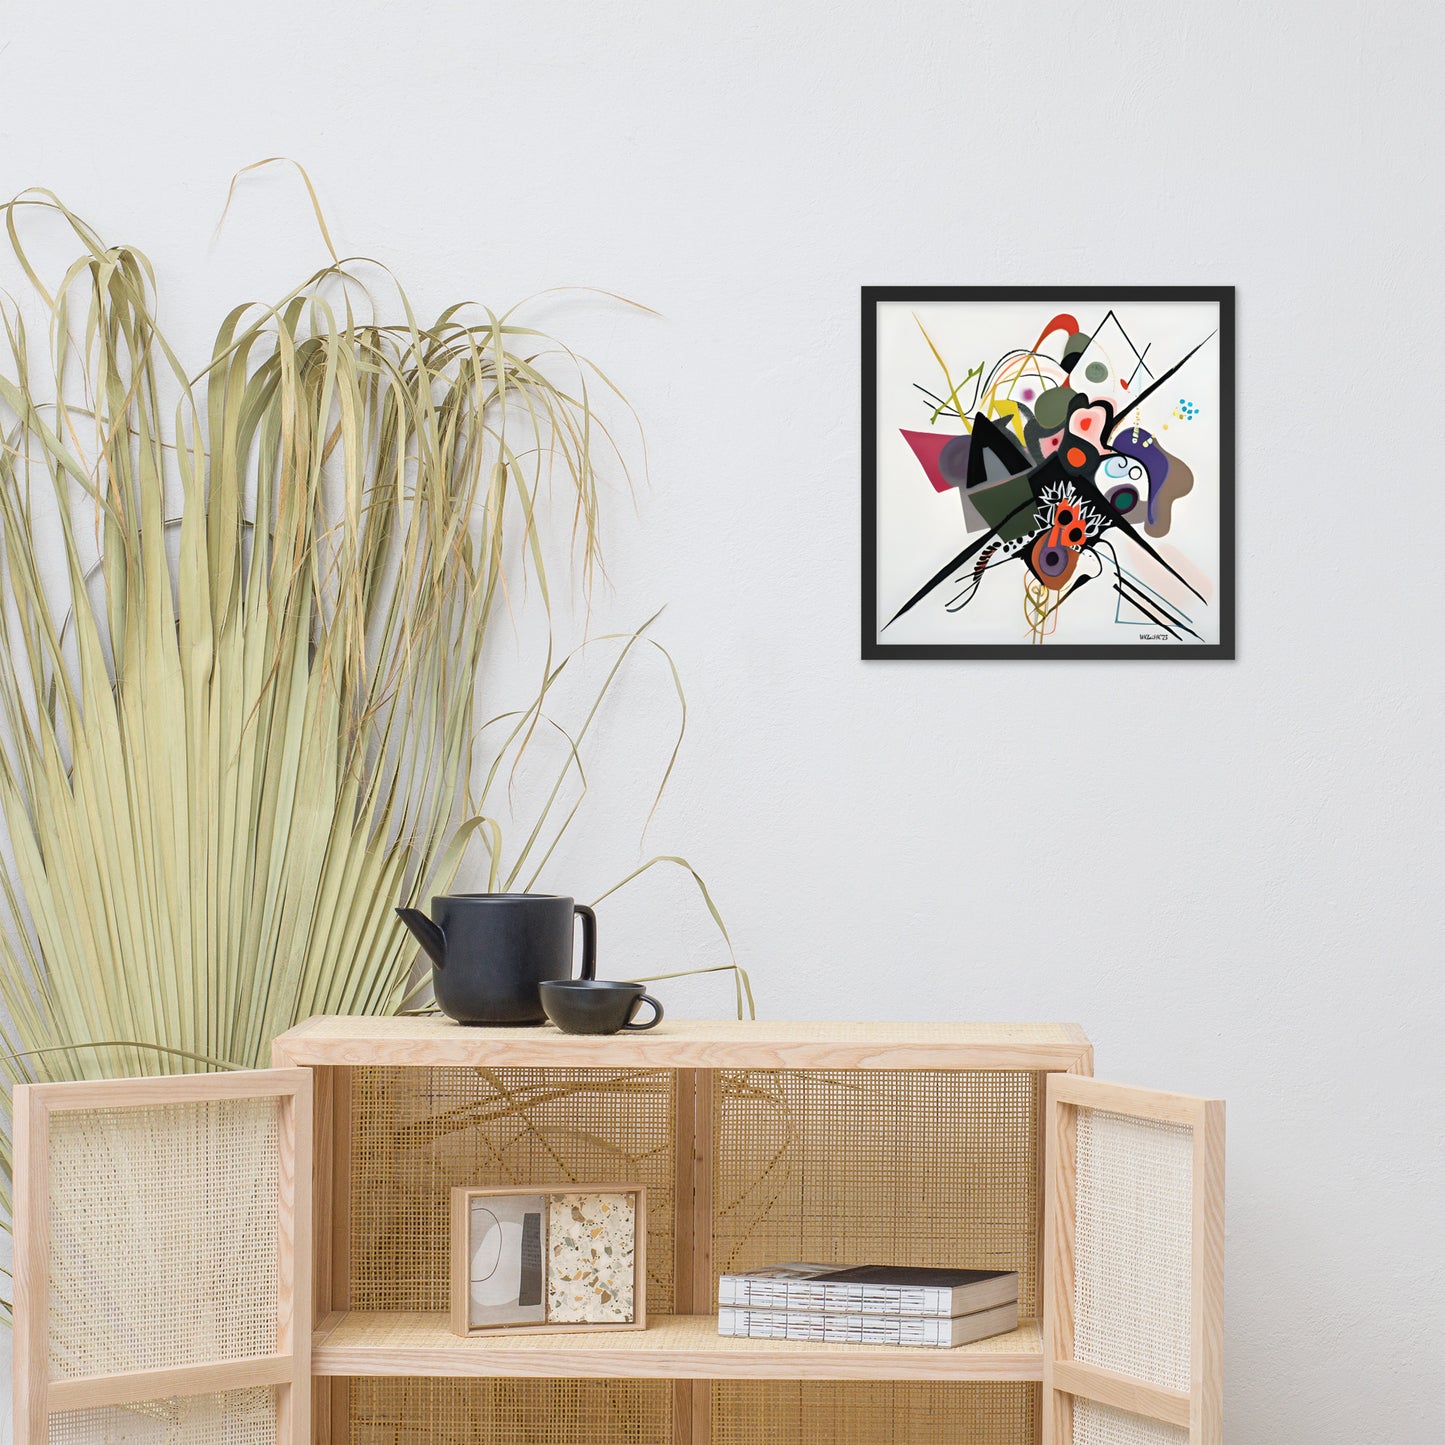 Kandinsky's On White II bai Klint Framed Poster